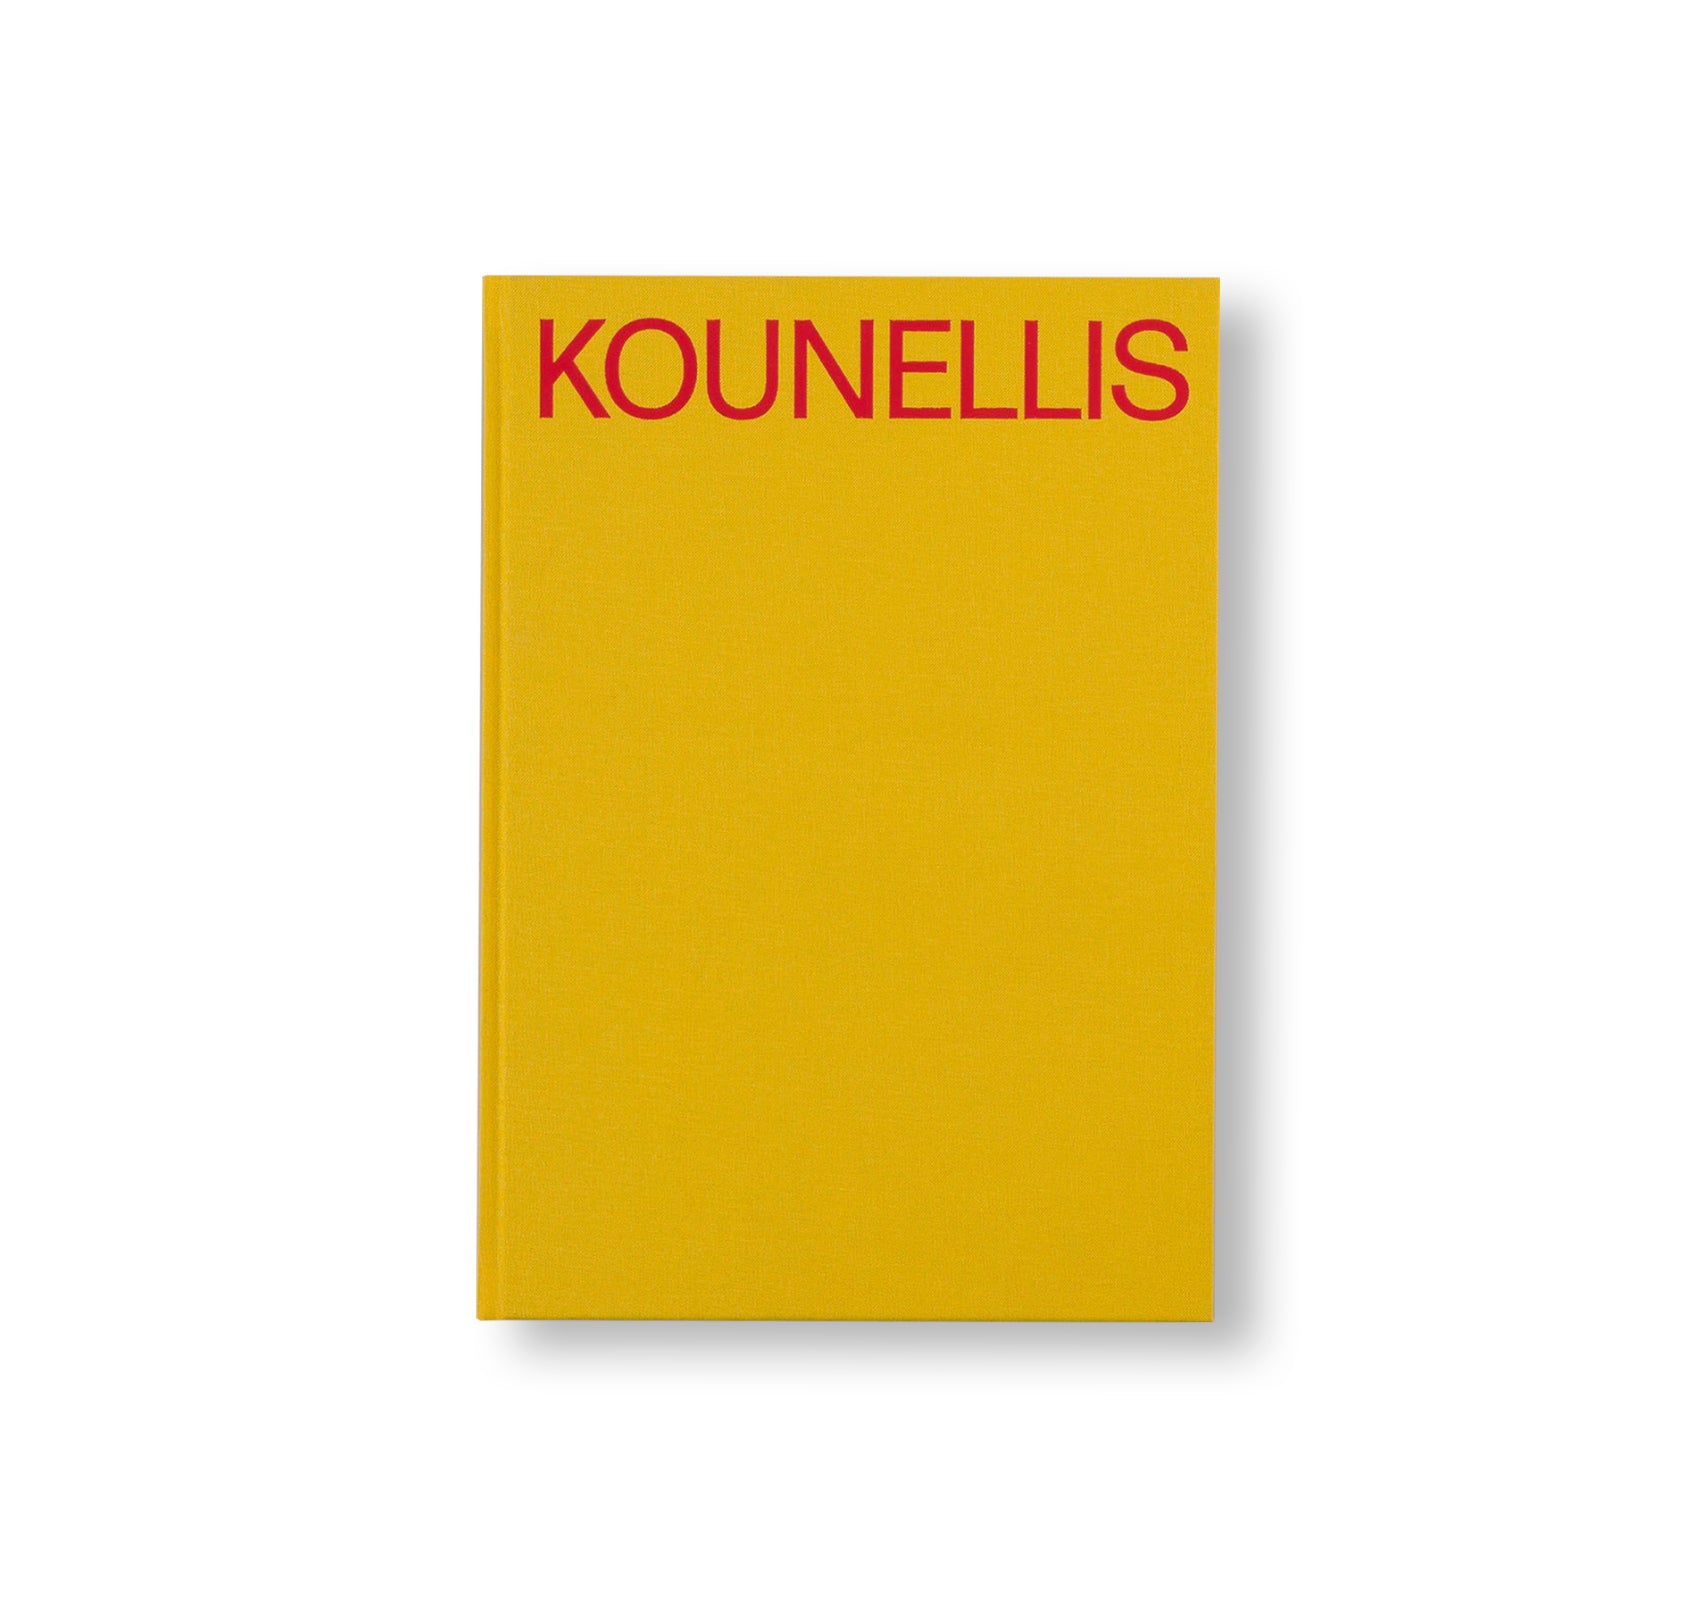 JANNIS KOUNELLIS by Jannis Kounellis